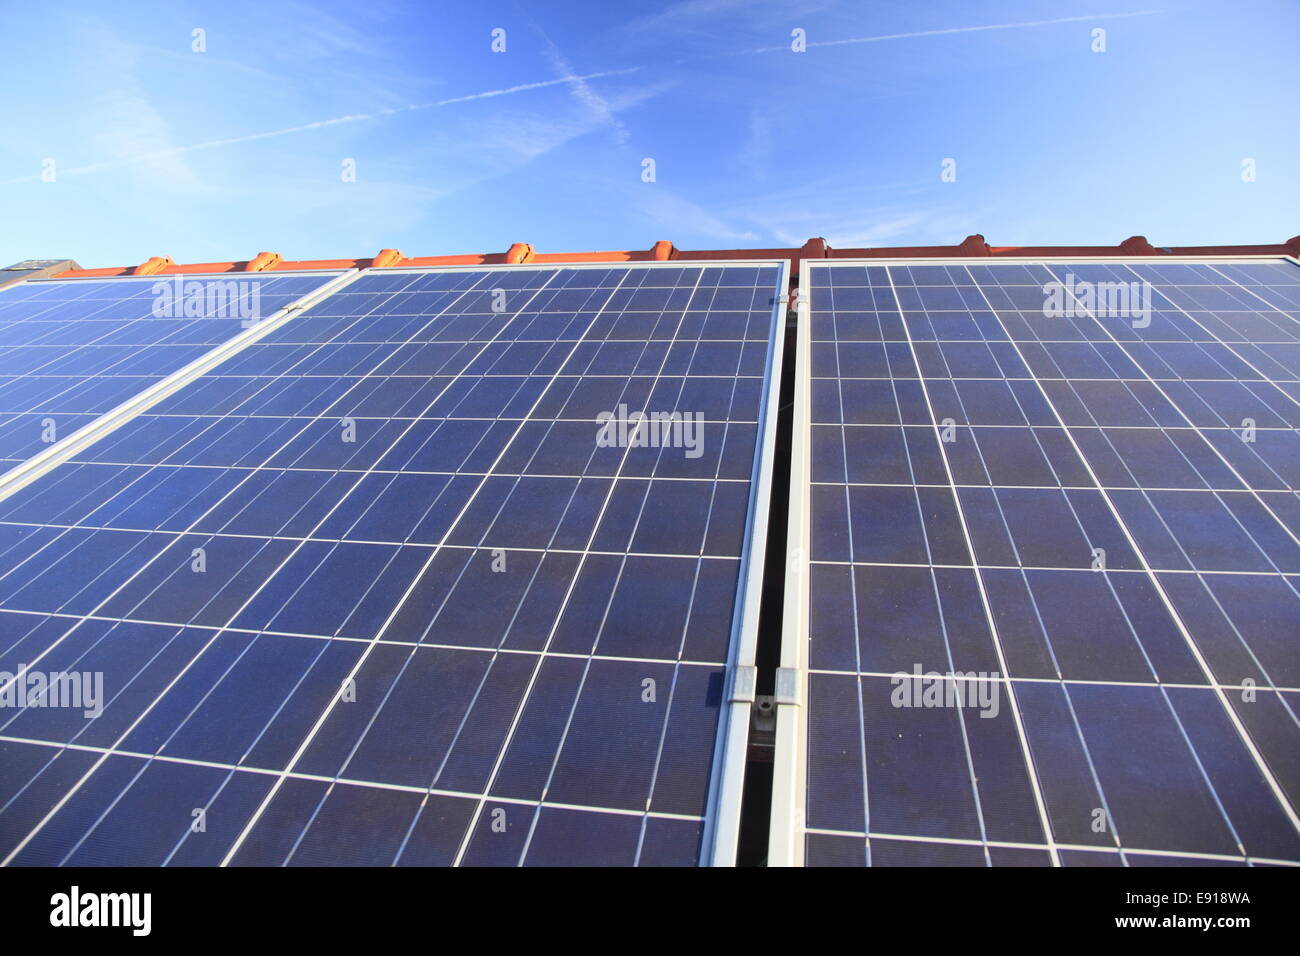 Choix de l'énergie photovoltaïque Banque D'Images